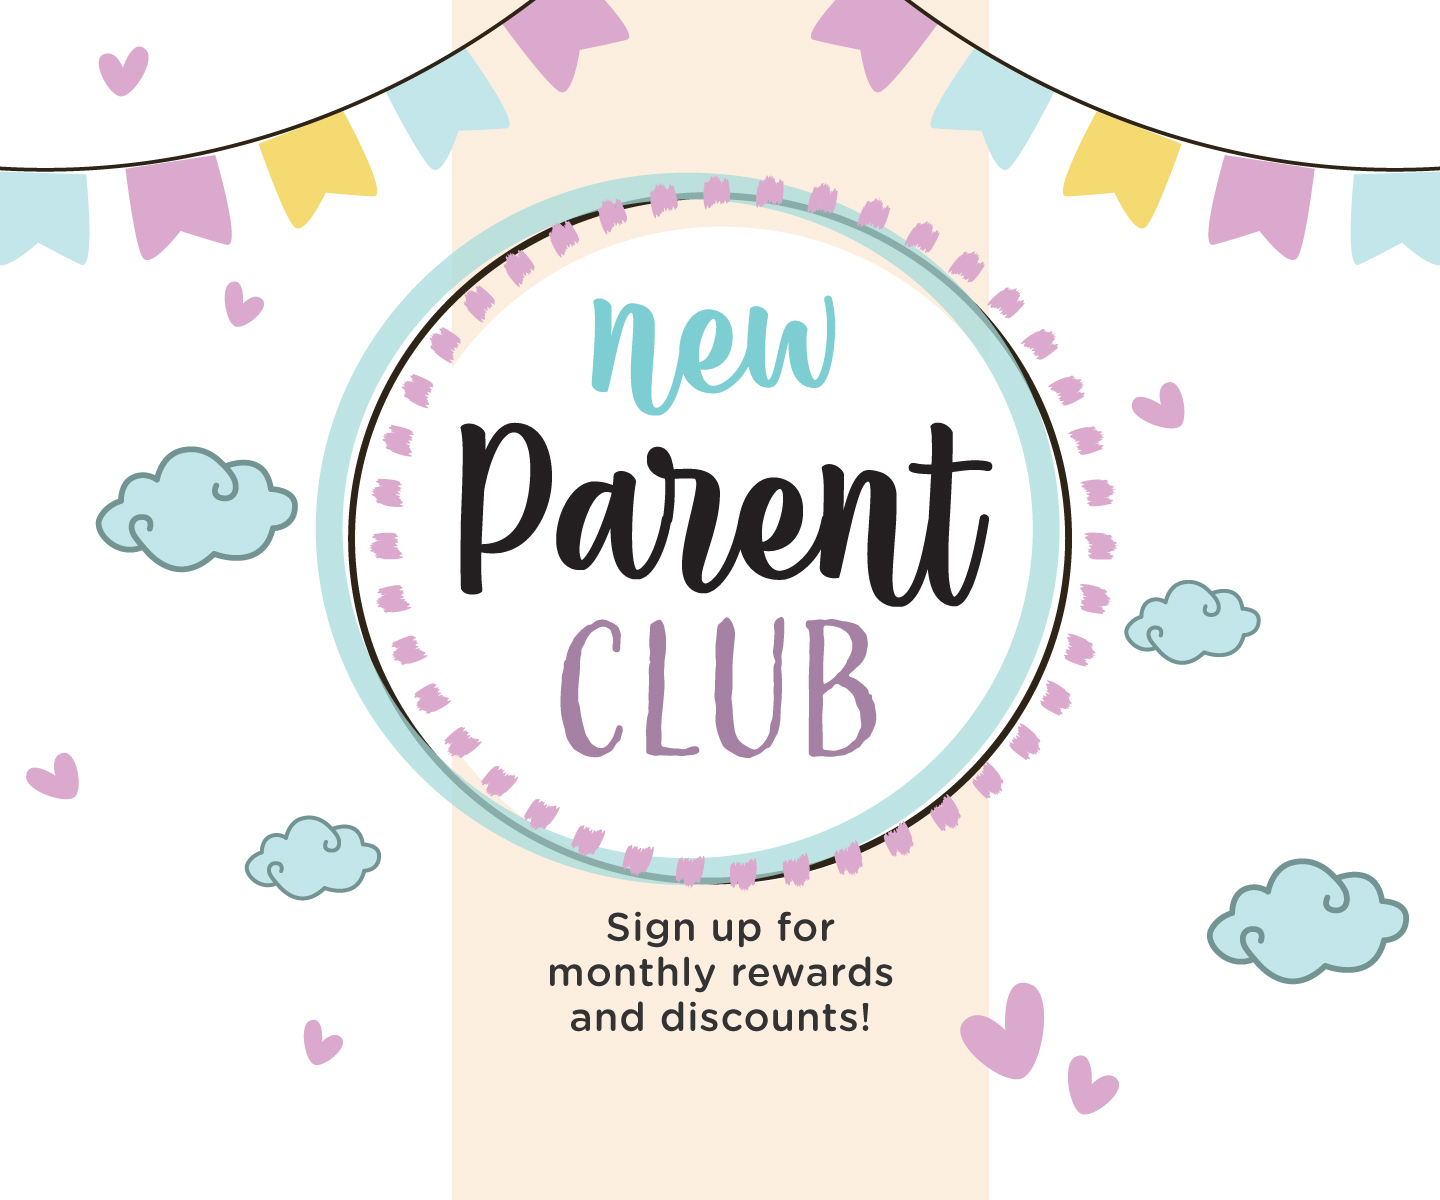 New Parents Club